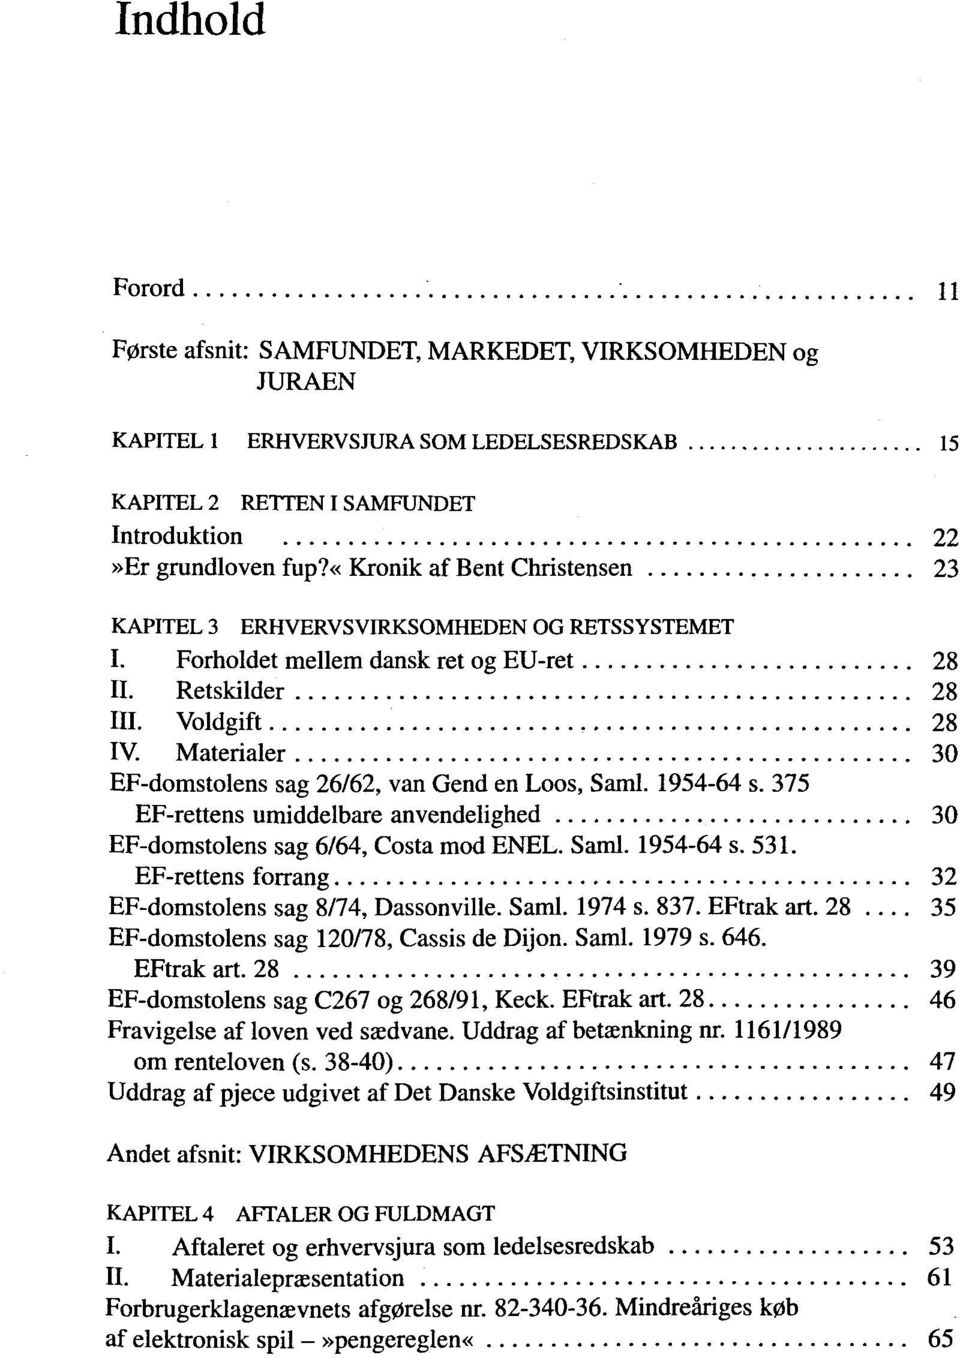 Materialer 30 EF-domstolens sag 26/62, van Gend en Loos, Saml. 1954-64 s. 375 EF-rettens umiddelbare anvendelighed 30 EF-domstolens sag 6/64, Costa mod ENEL. Saml. 1954-64 s. 531.